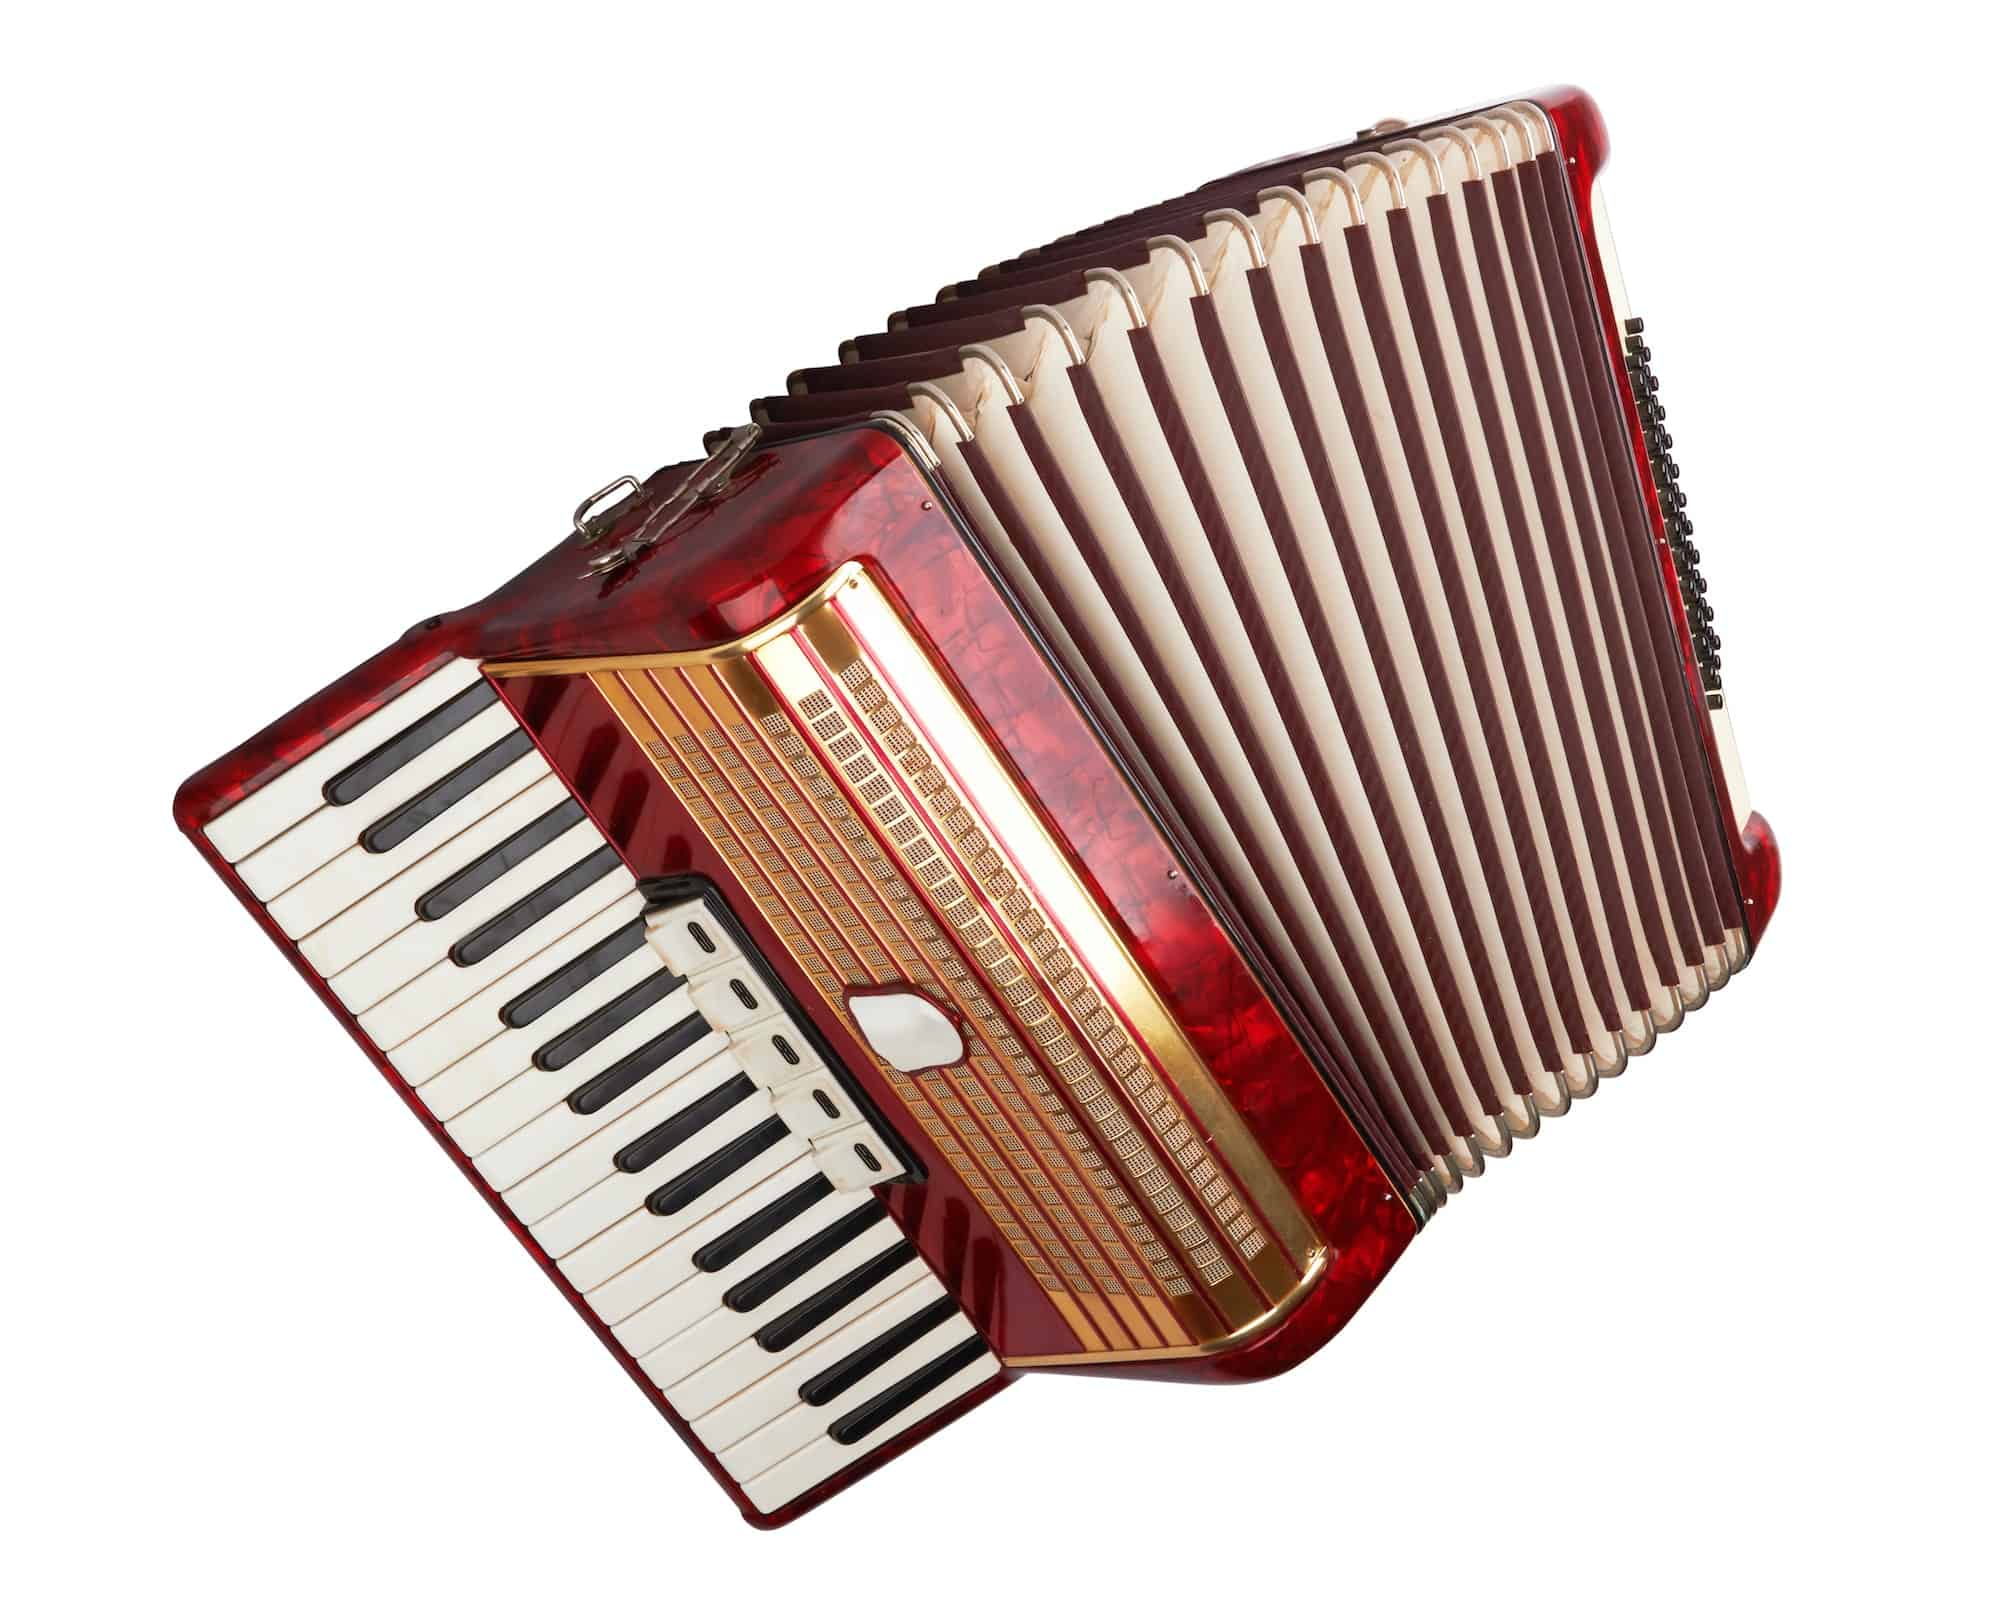 Retro accordion isolated